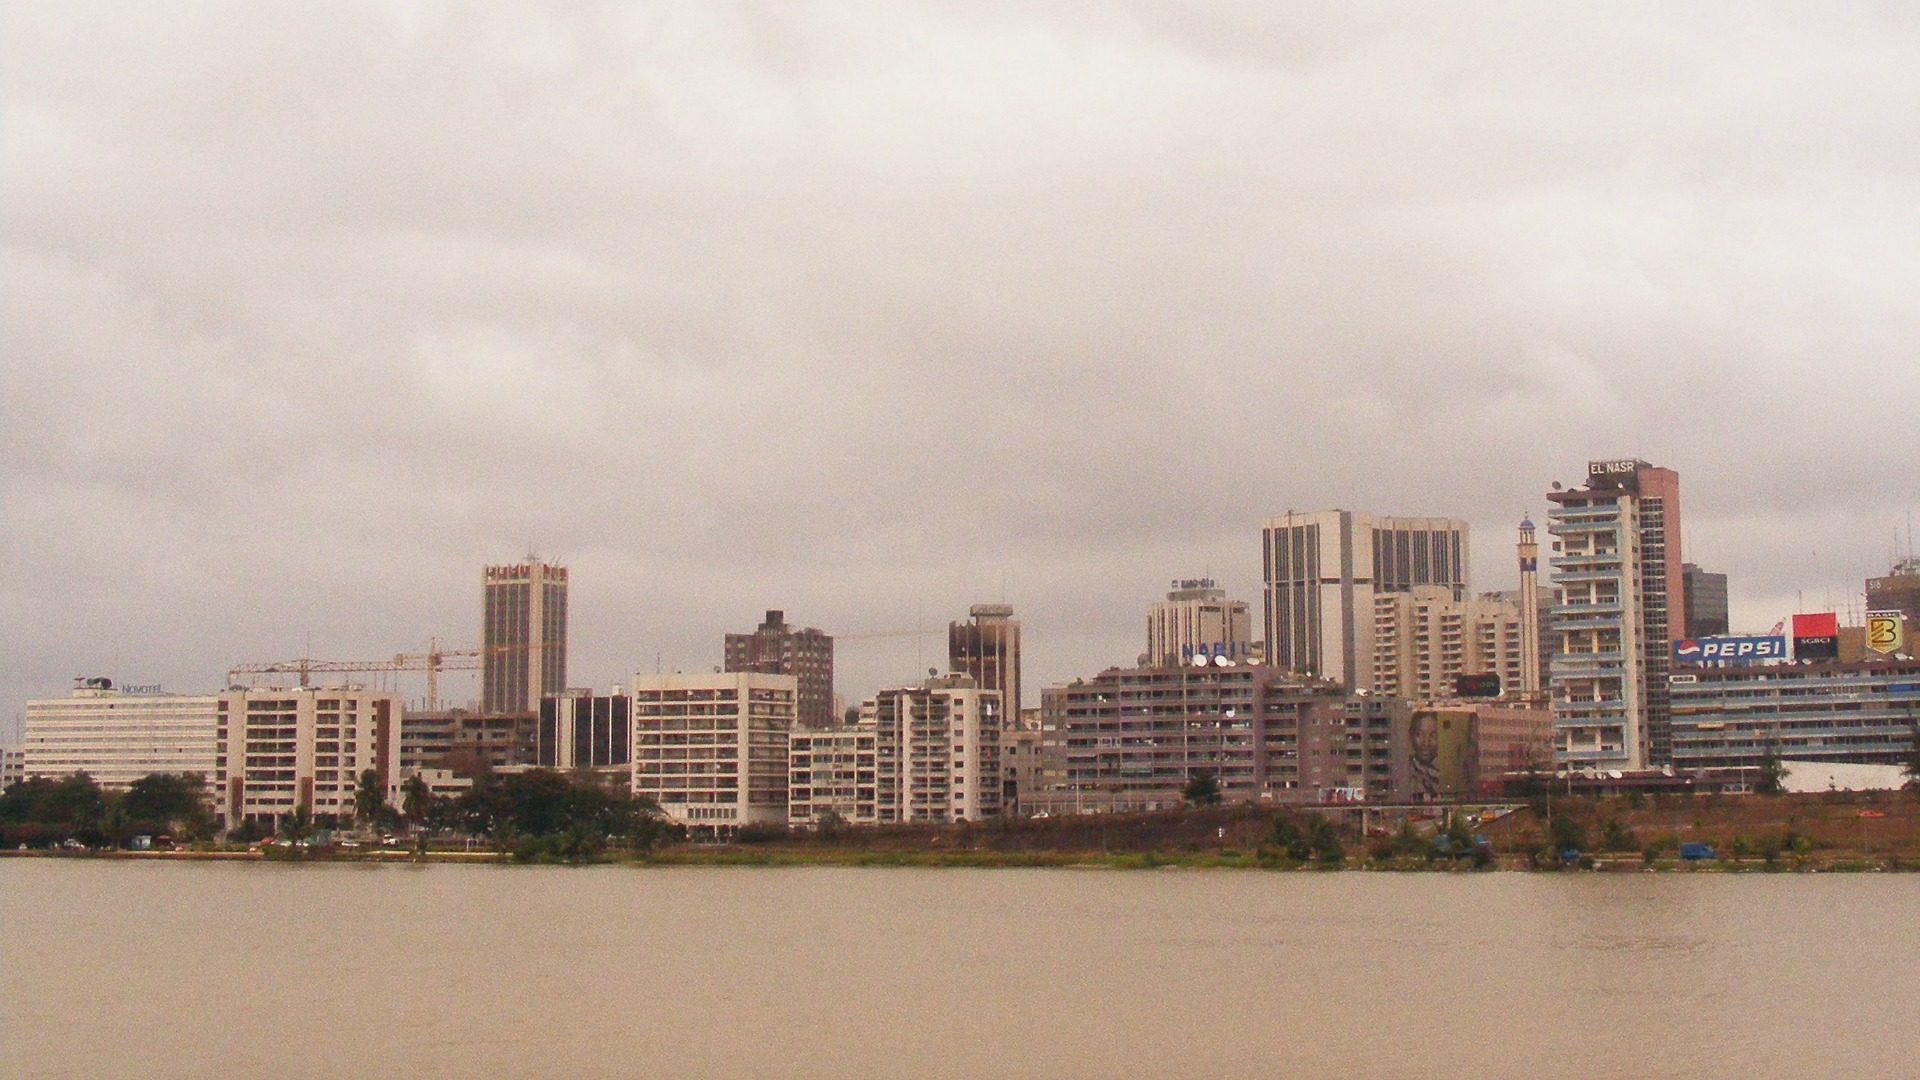 Abidjan, en Côte d'Ivoire, accueille la "croisade mariale". (Photo: Flickr/abdallahh/CC BY 2.0)